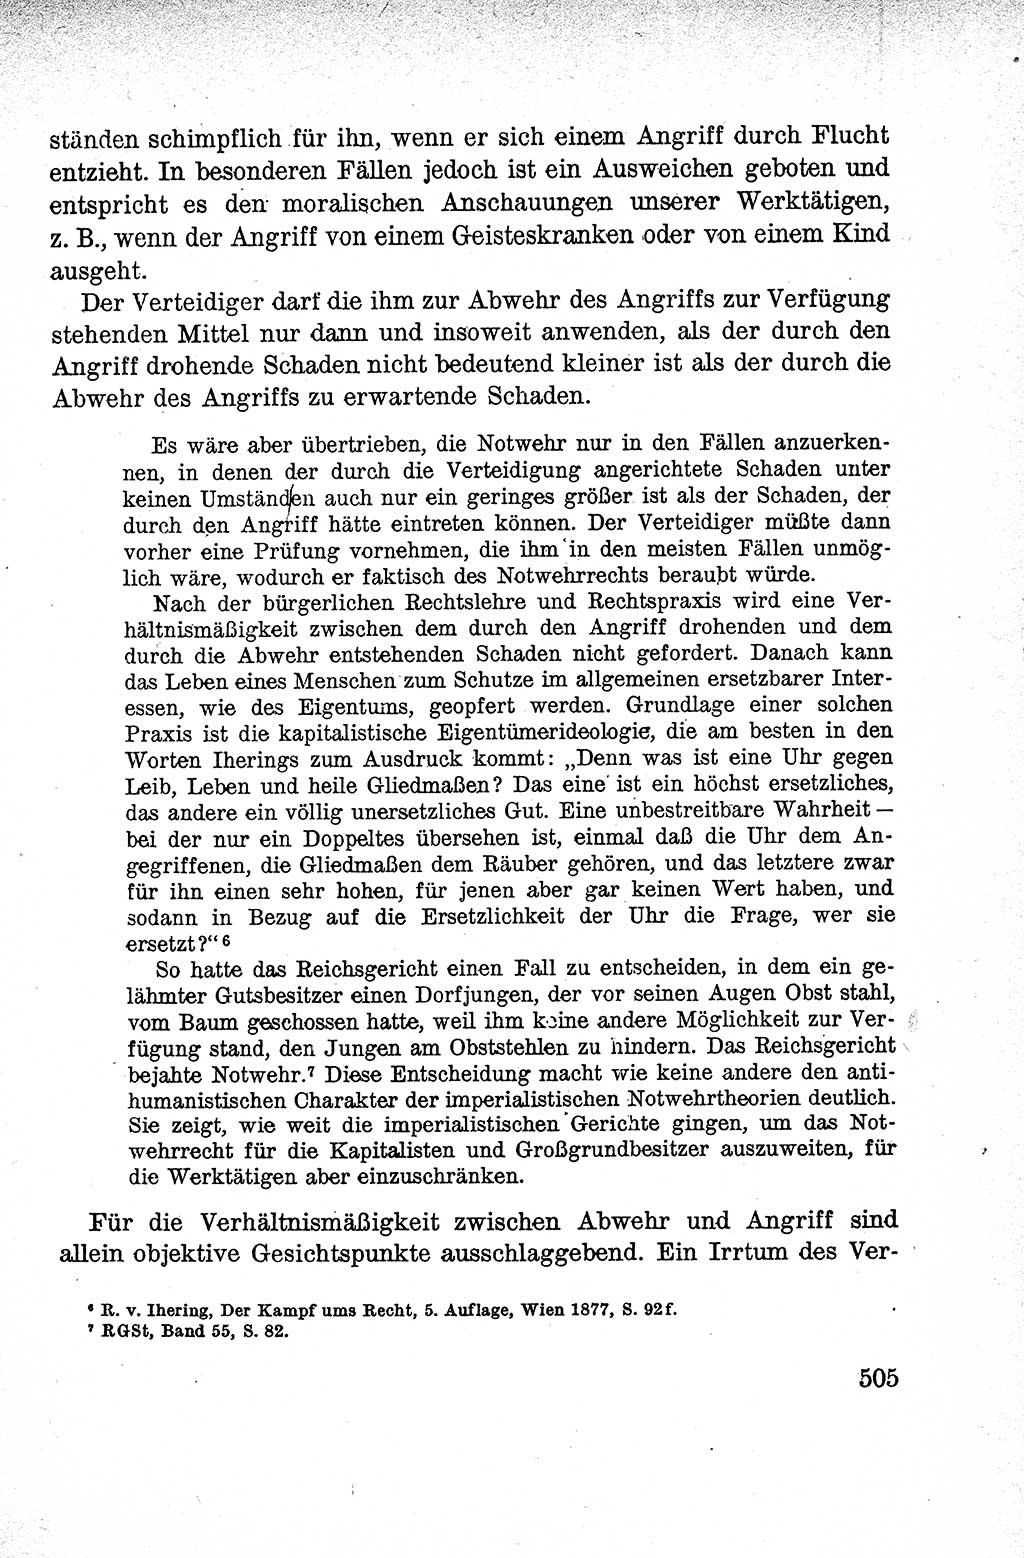 Lehrbuch des Strafrechts der Deutschen Demokratischen Republik (DDR), Allgemeiner Teil 1959, Seite 505 (Lb. Strafr. DDR AT 1959, S. 505)